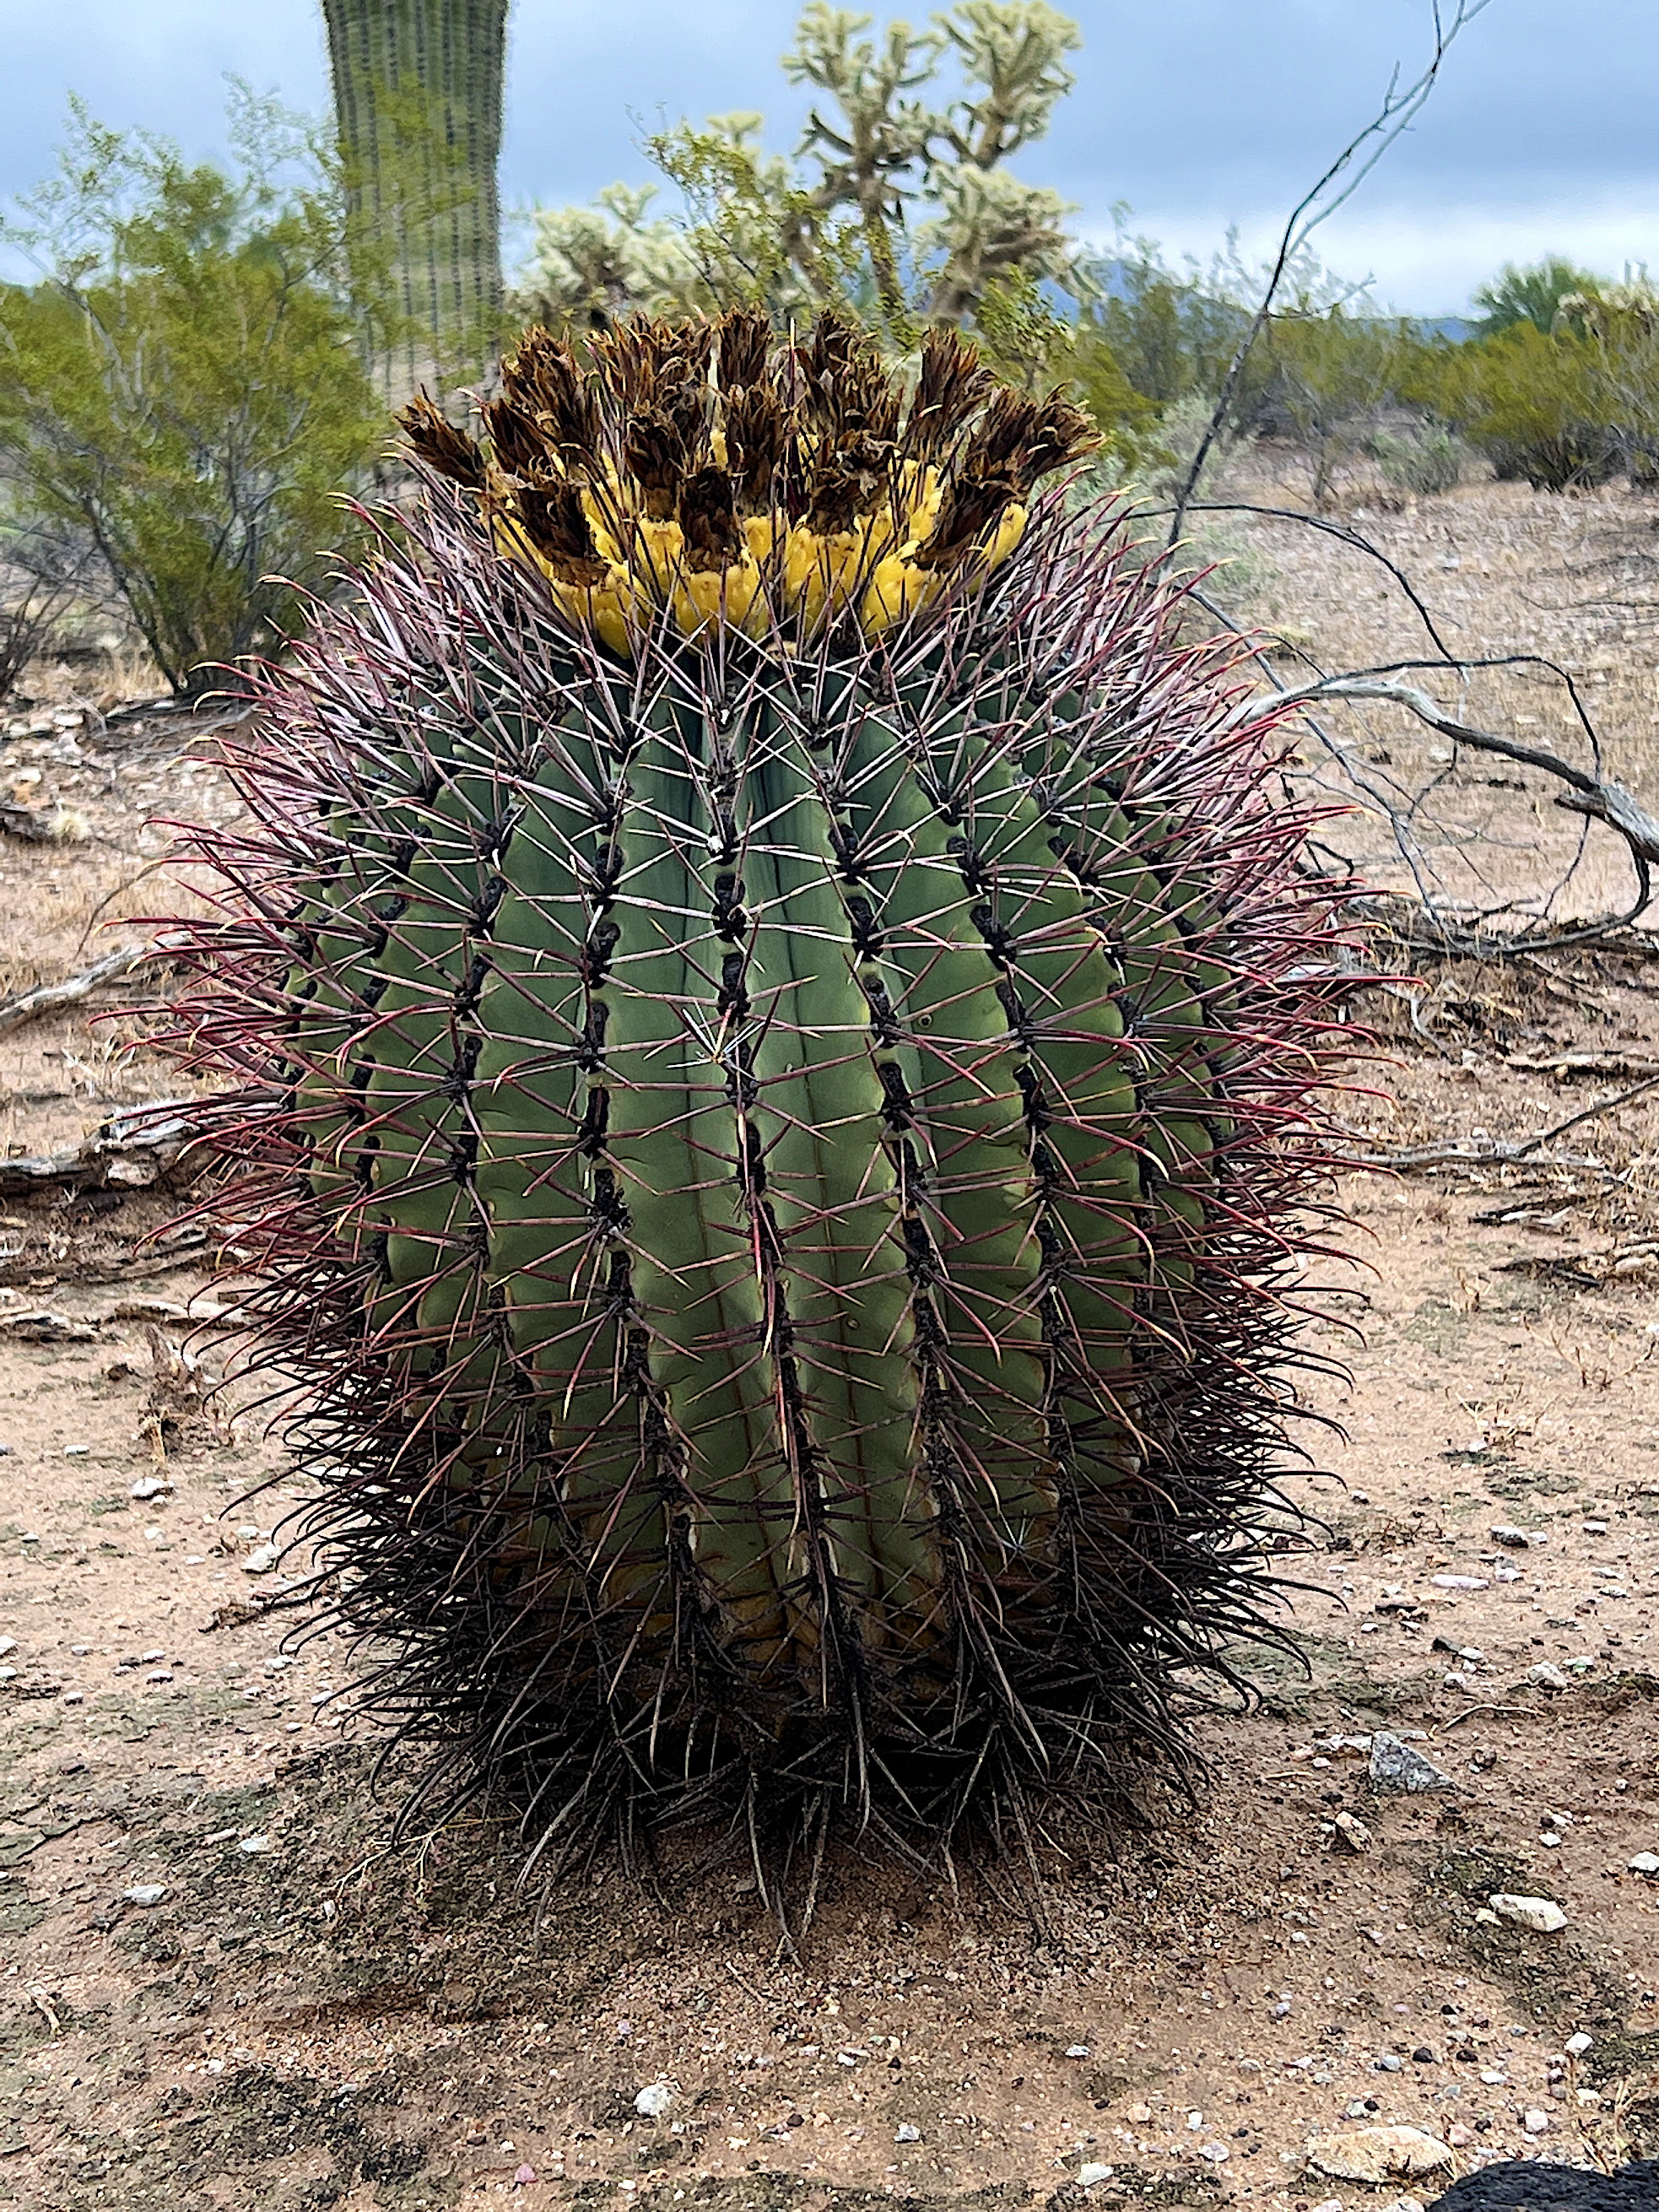 Ein länglich runder Fass-Kaktus, wissenschaftlich Ferocactus wislizeni. Er hat dicke, dichte Stacheln. Auf der Oberseite trägt er gelbe, reife Kaktusfrüchte.